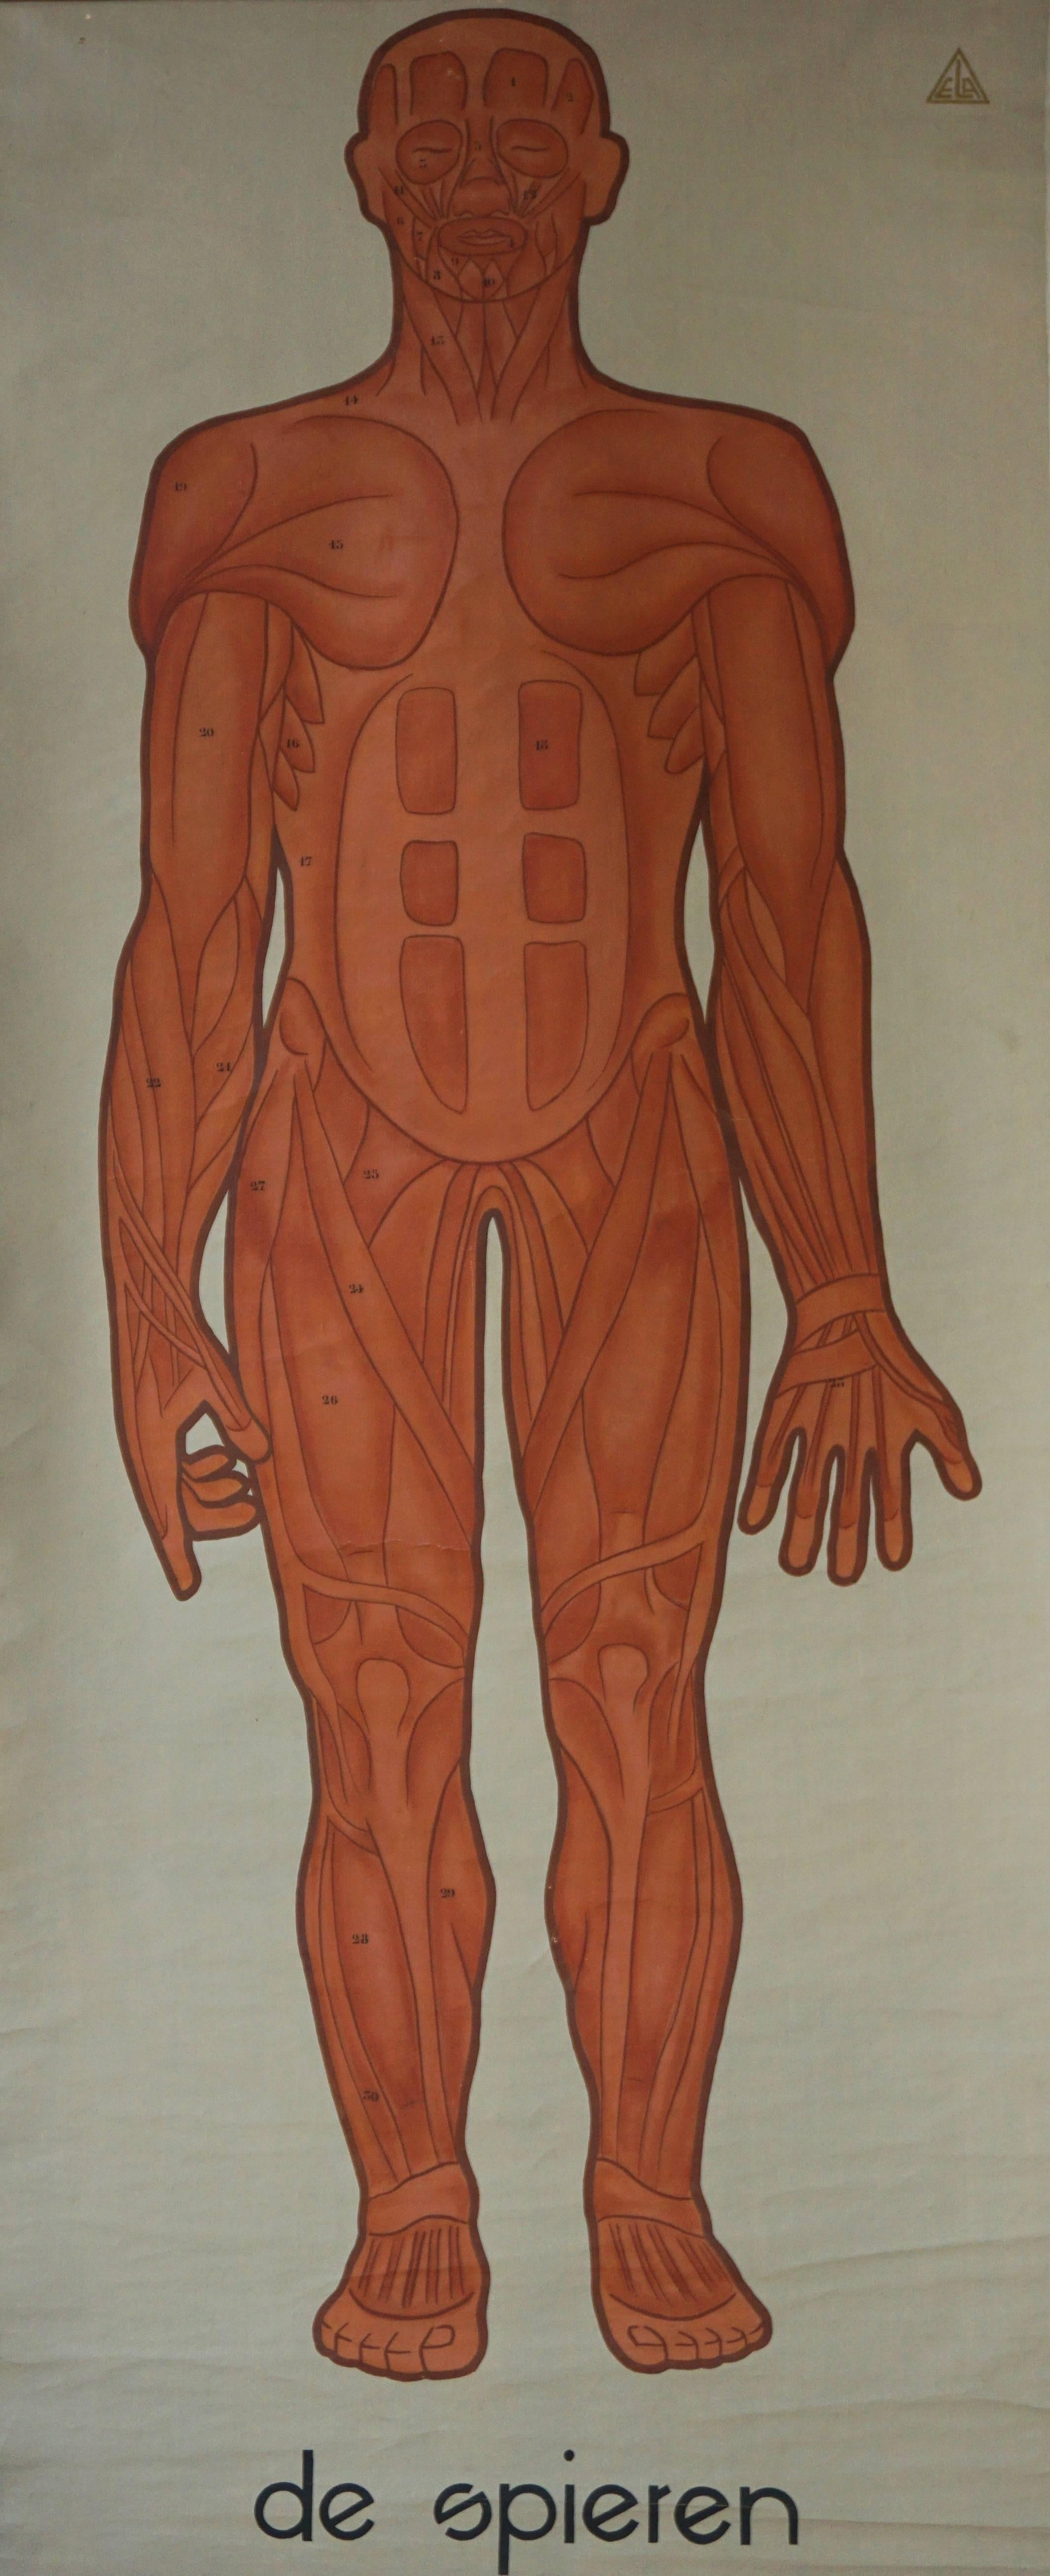 Anatomische Karte der Muskulatur des Menschen.
Holland, um 1930.